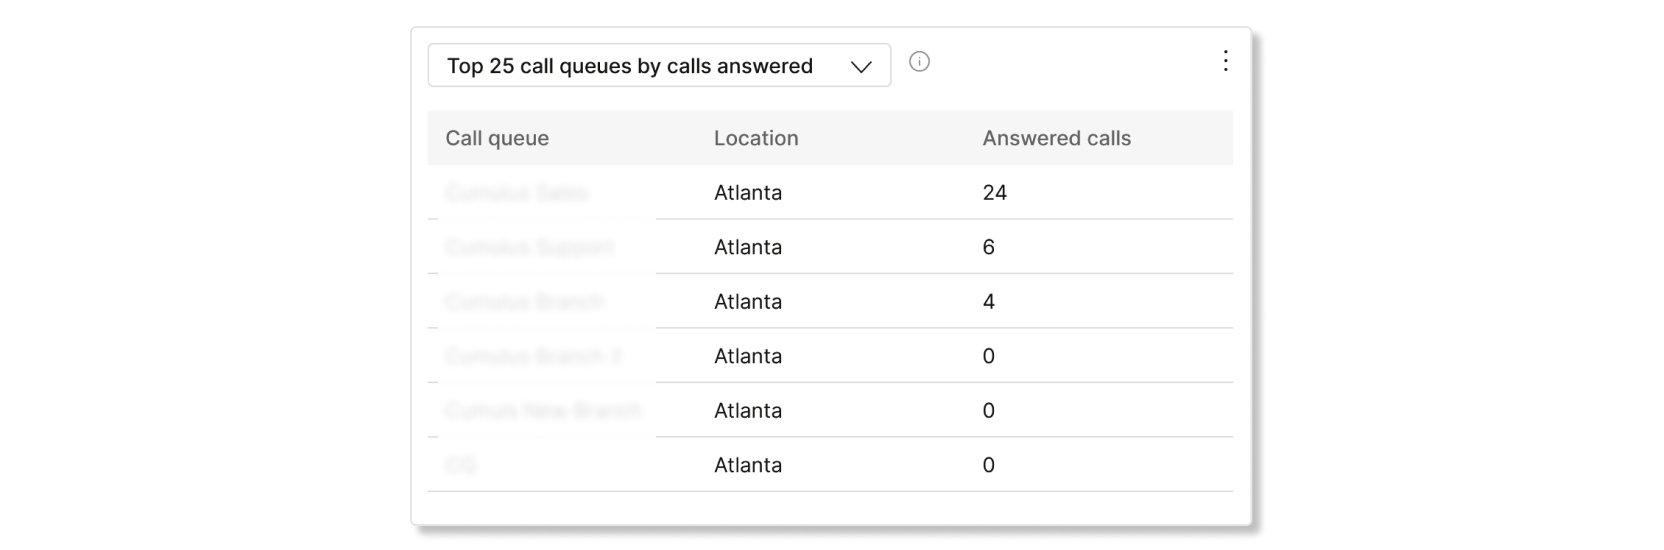 Tabla de las 25 colas de llamadas principales por porcentaje de llamadas en el análisis de estadísticas de la cola de llamada